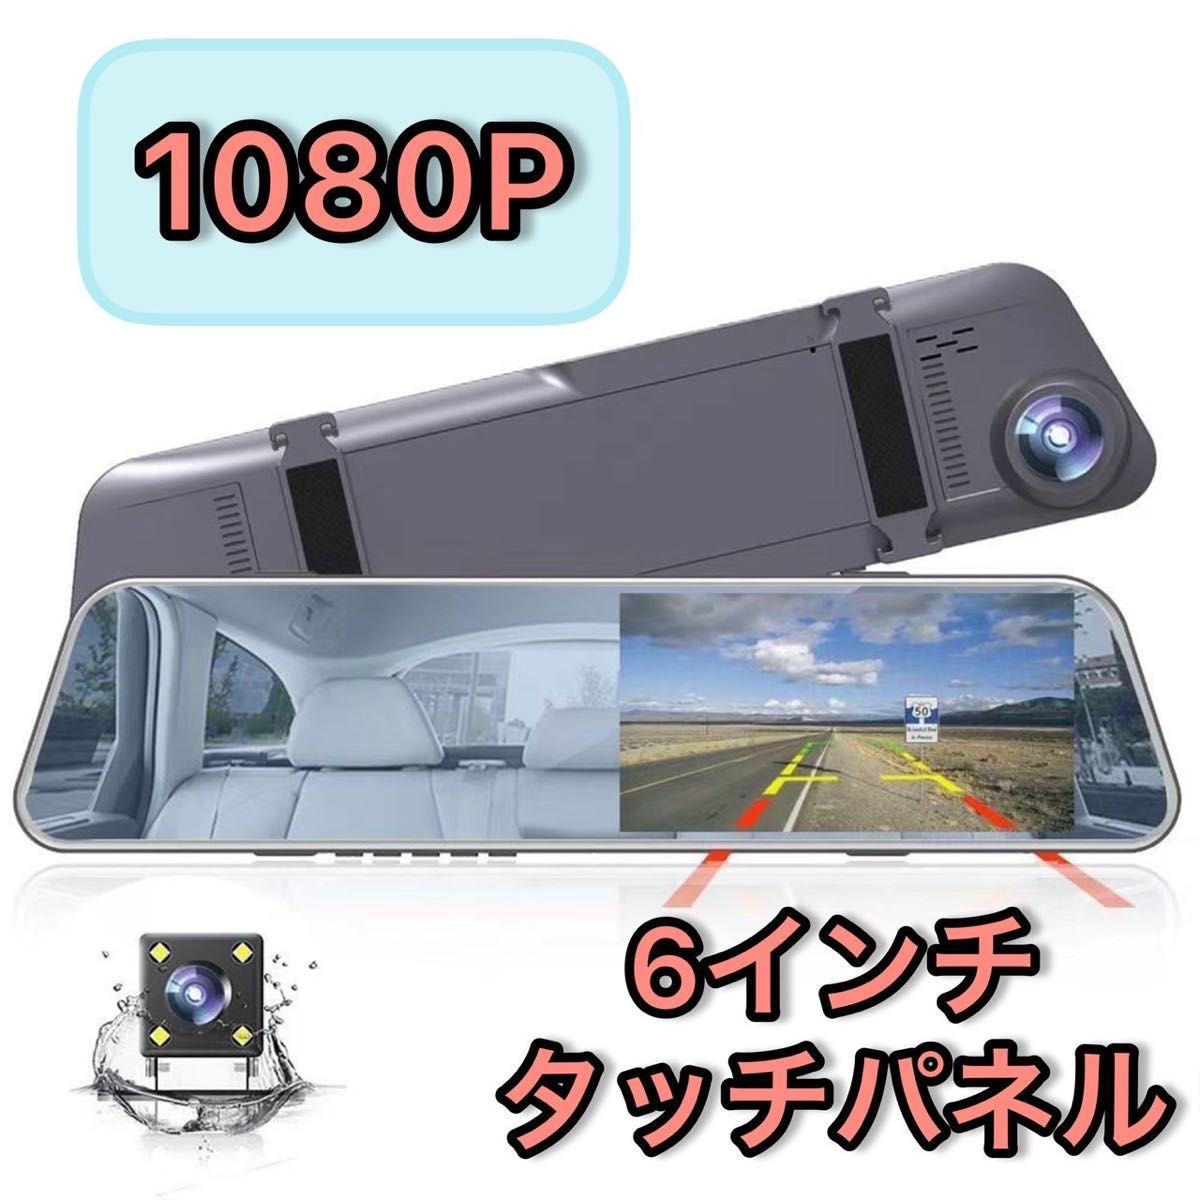 ドライブレコーダー ミラー型 前後カメラ 1080P高画質 SDカード対応 ナイトモード掲載 タッチパネル リヤカメラ付き